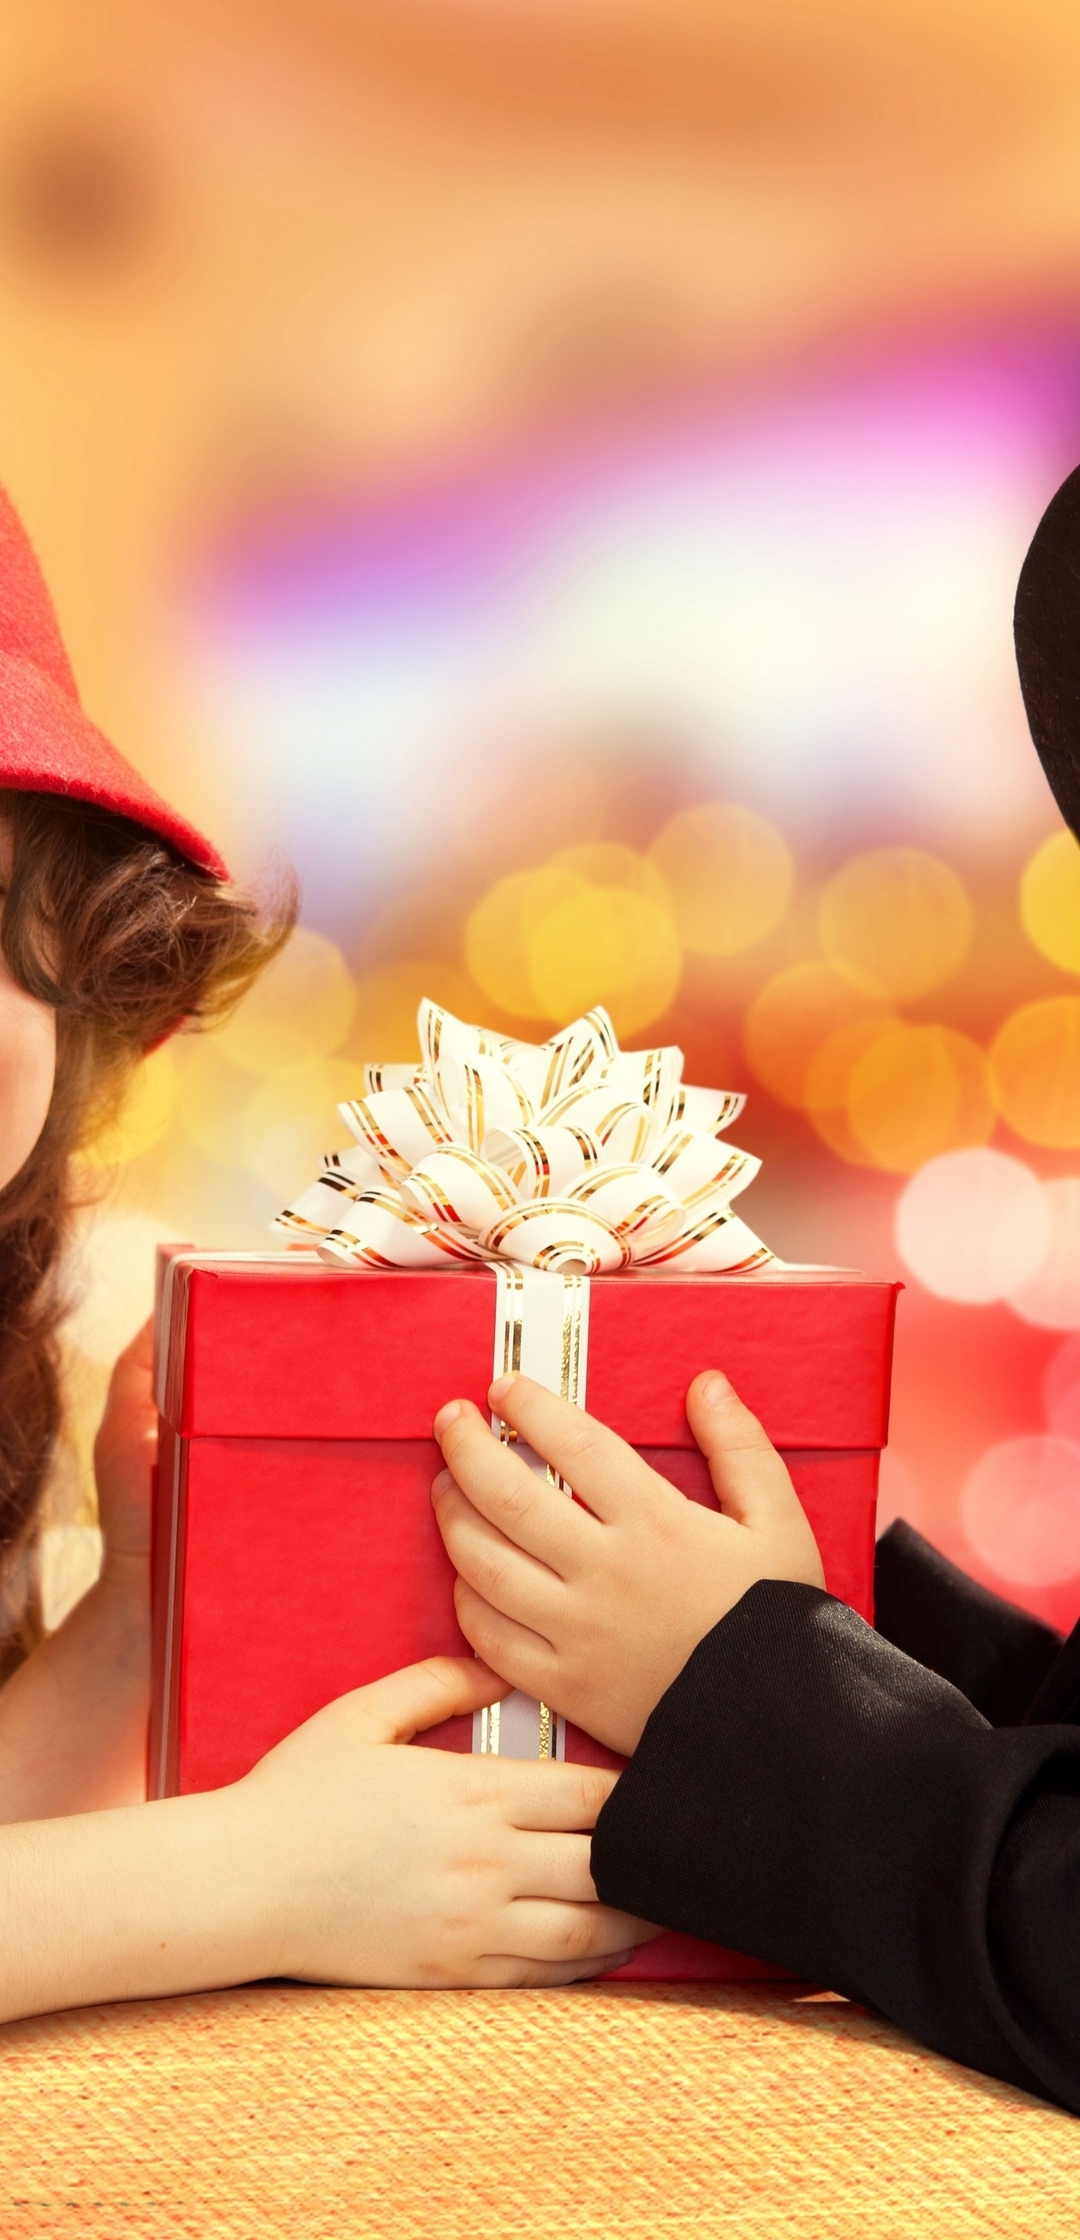 Картинка: Мальчик, девочка, дети, шляпа, подарок, праздник, улыбка, настроение, счастье